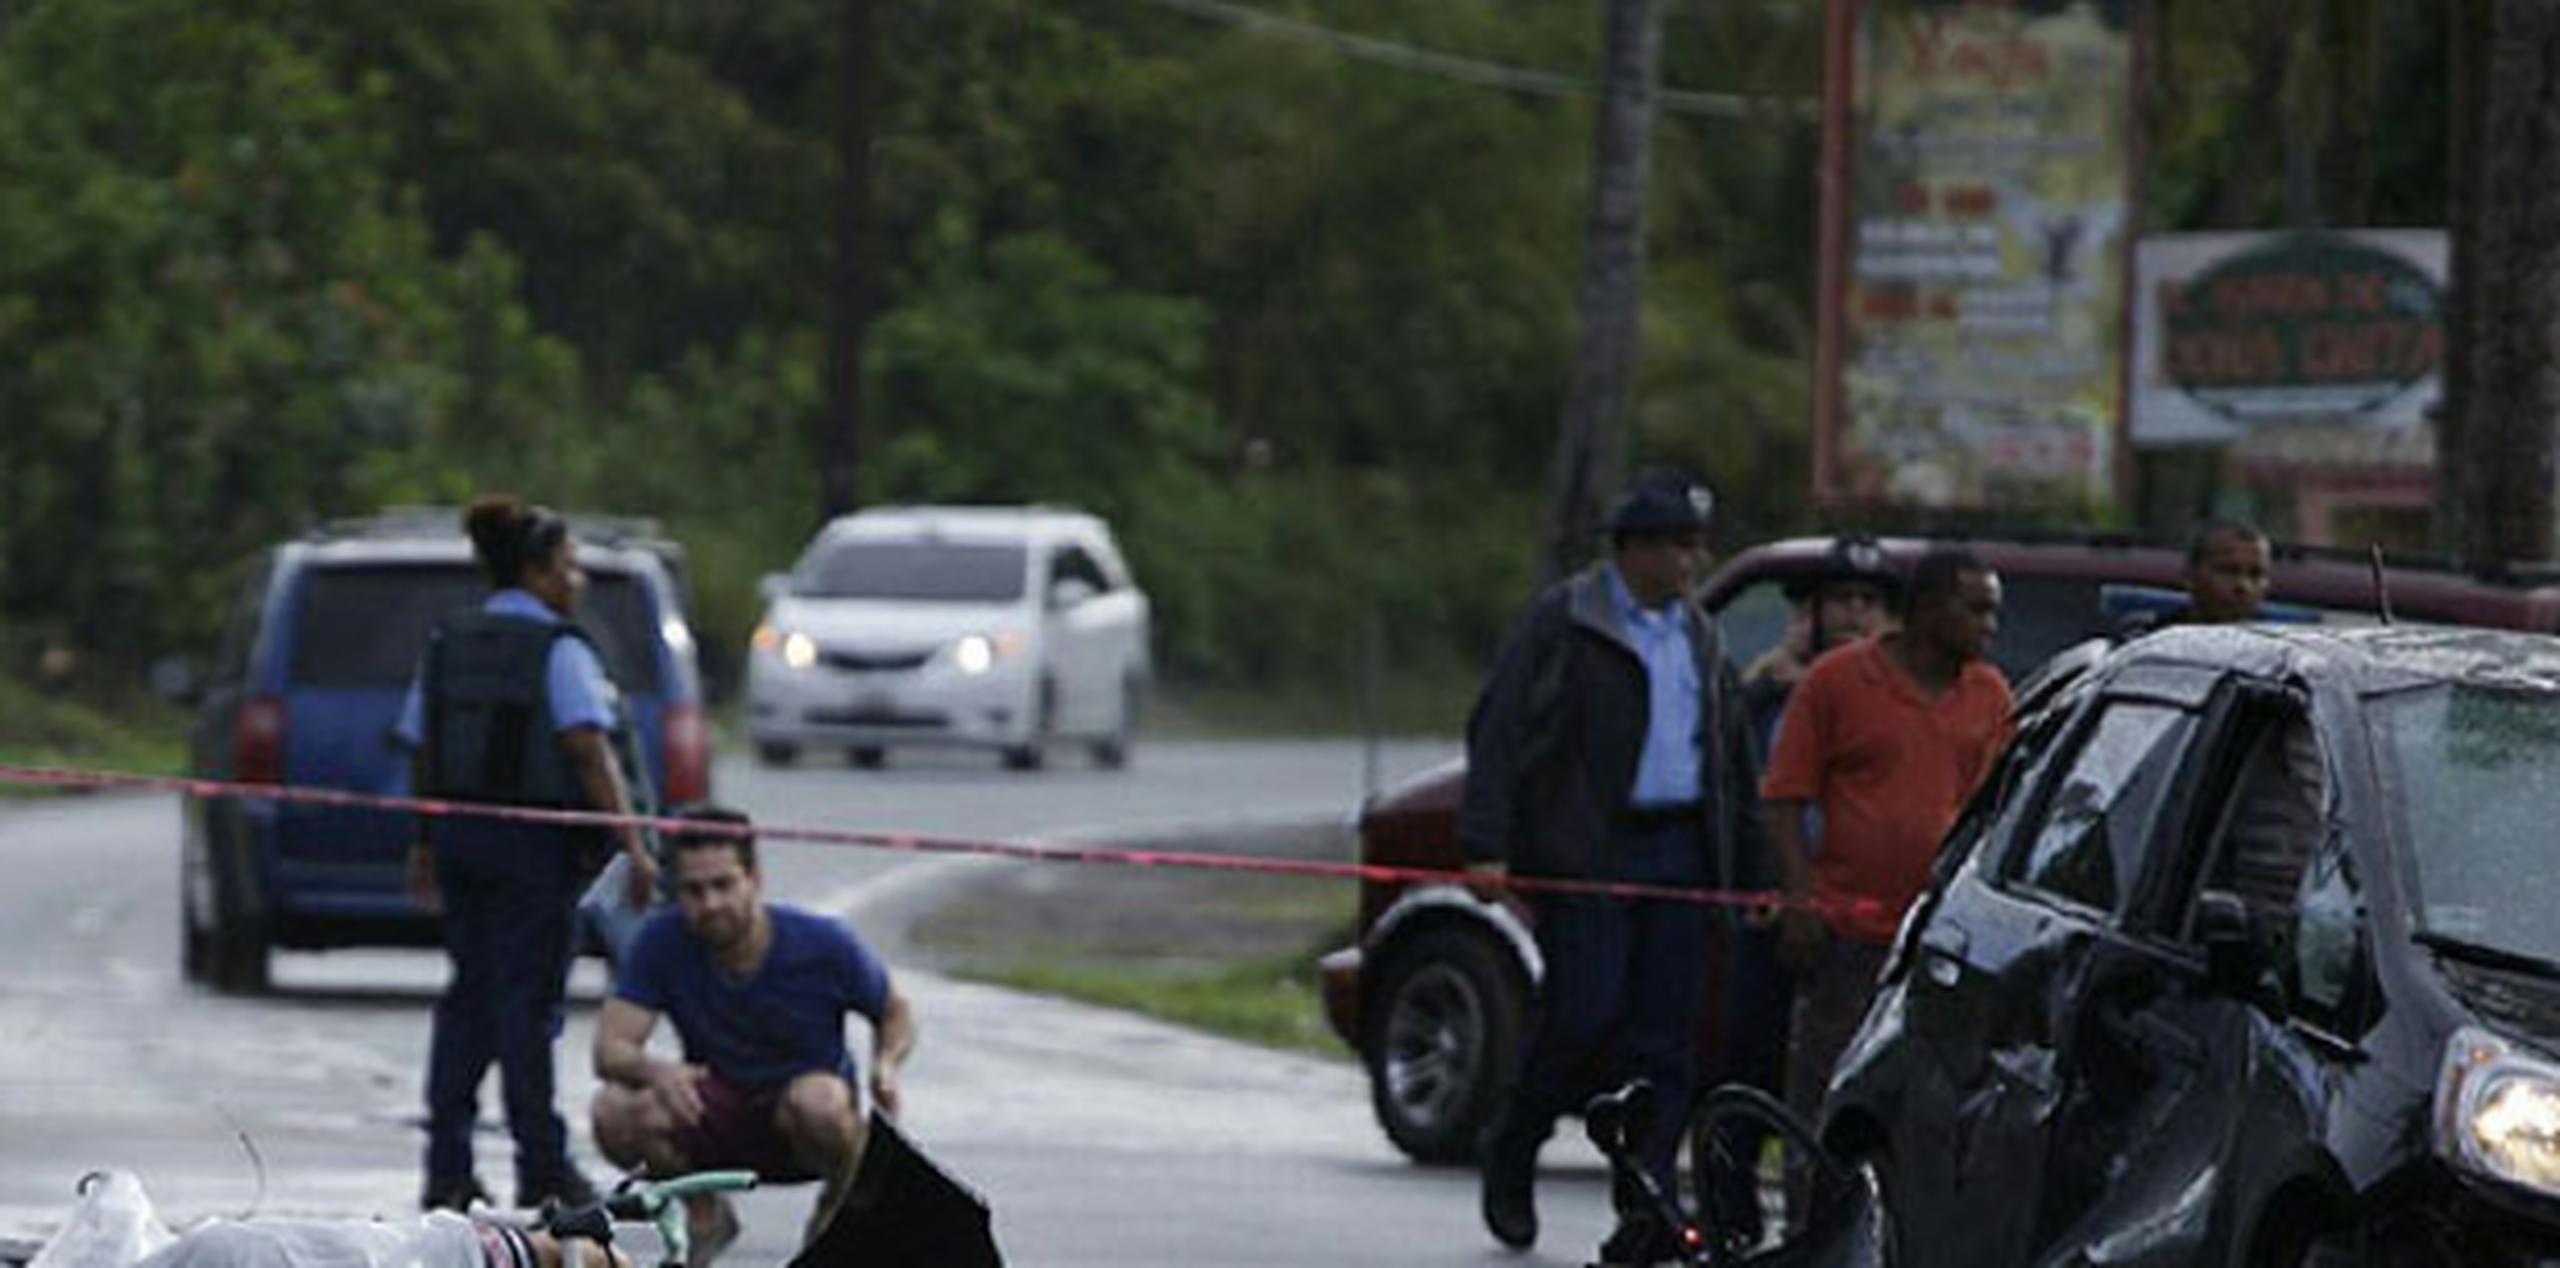 El ciclista que perdió la vida era residente de San Juan.(Suministrada/Erika Rodríguez)